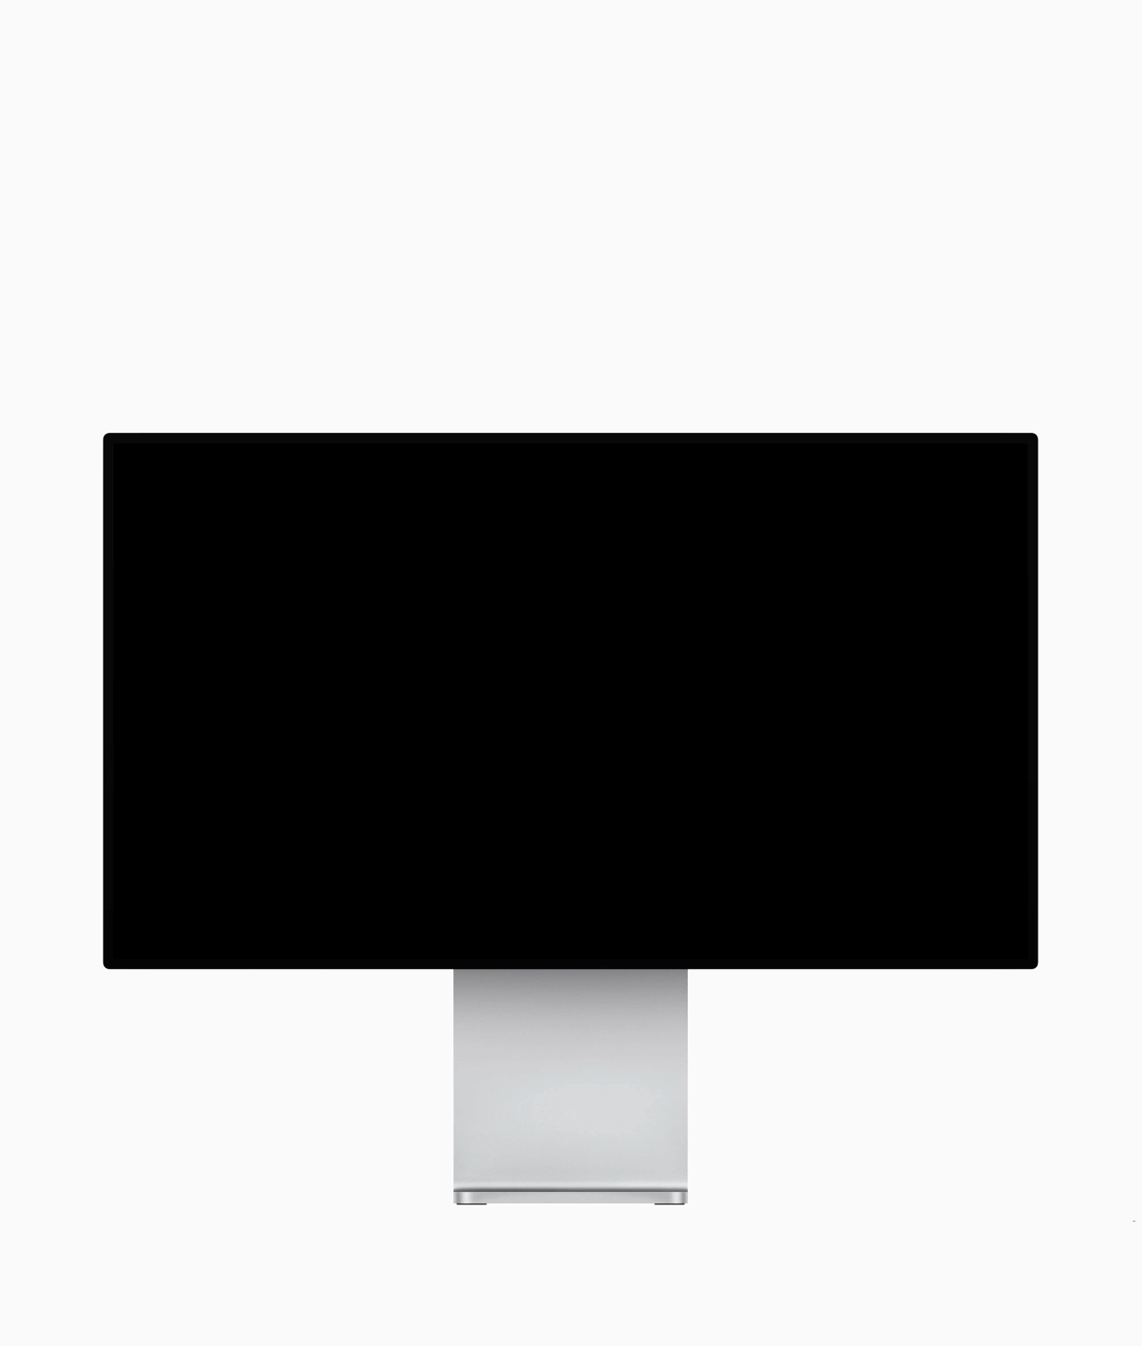 6 年前 Mac Pro 以獨特的圓桶設計面世，但外界對這個設計的評價好壞參半，被人揶揄為「垃圾桶」。今年 Apple 於 WWDC 上公佈新一代 Mac Pro，全新的機身設計，配合最新硬件規格，針對專業人士的需要而設，是目前最強大的桌面電腦。